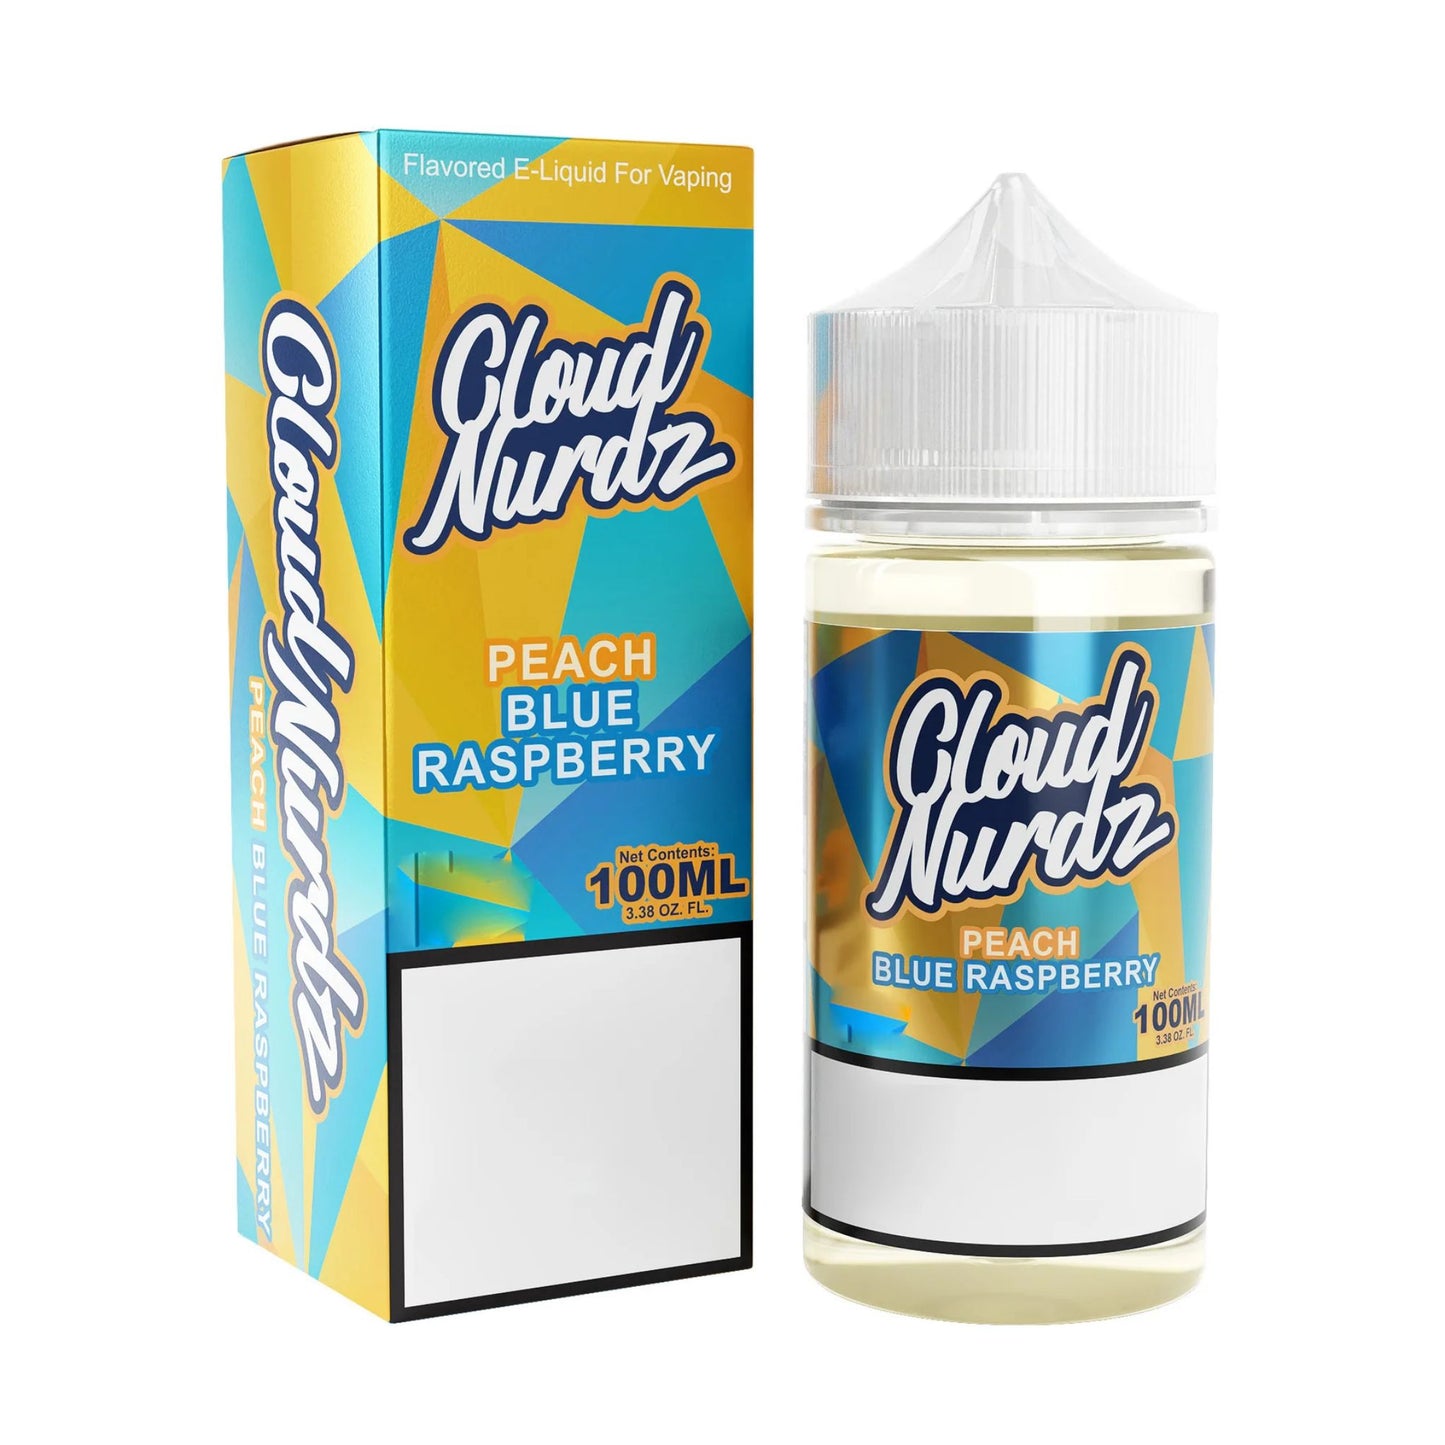 Cloud Nurdz | Peach Blue Raspberry | 100ml bottle and box